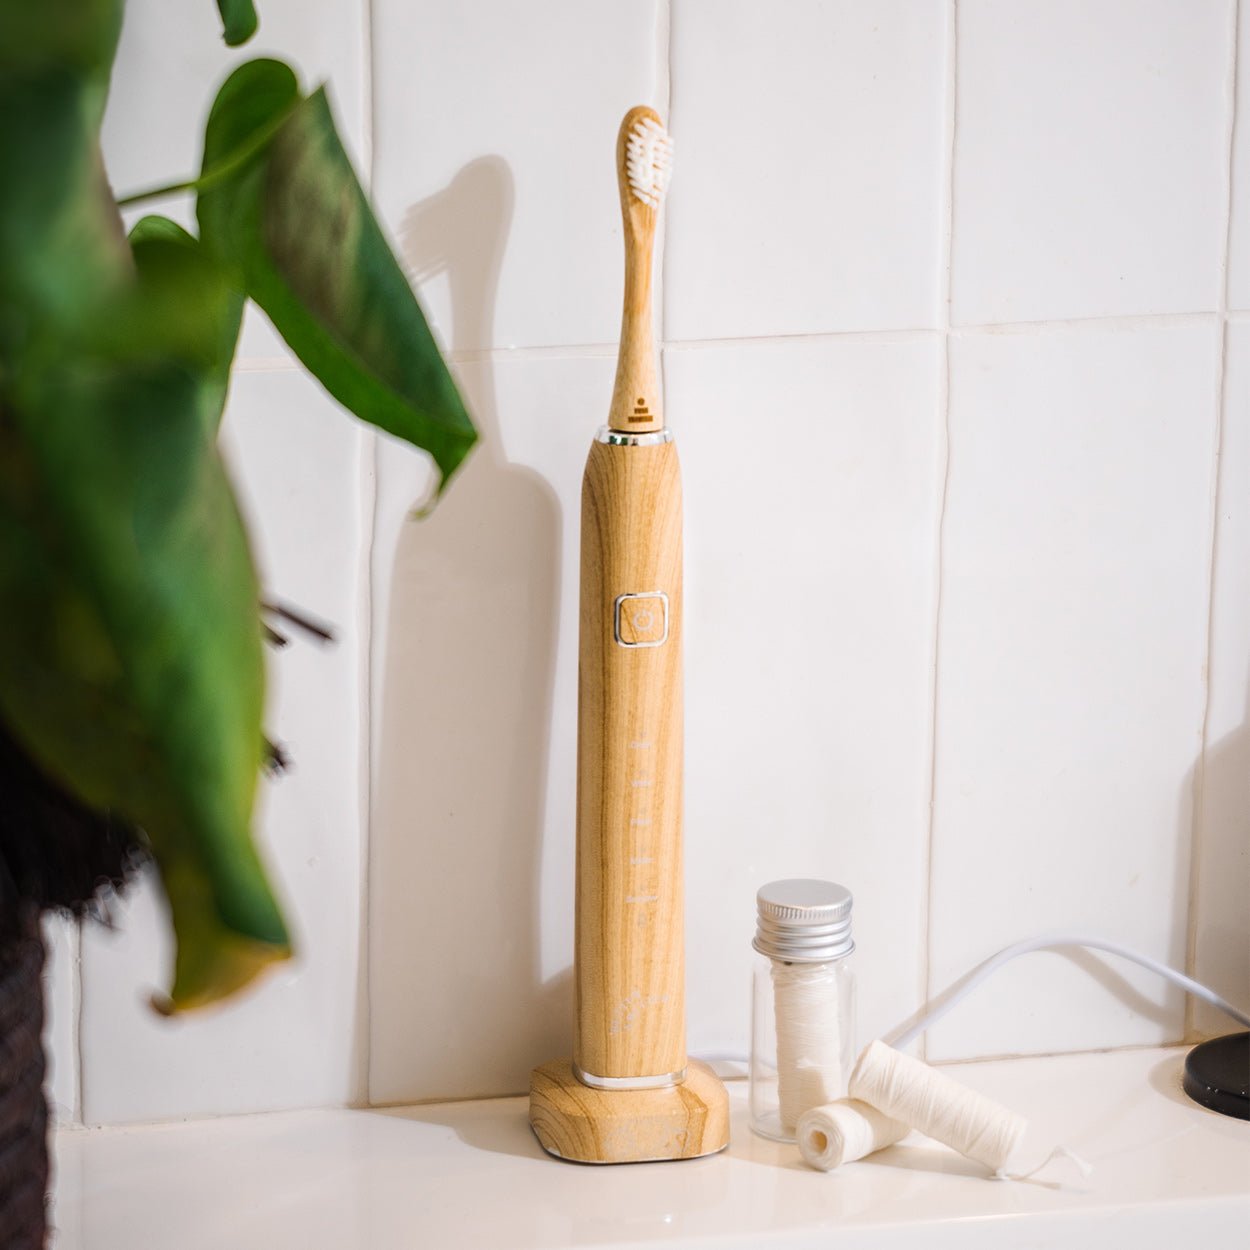 Better & Better Bamboo Sonic Toothbrush